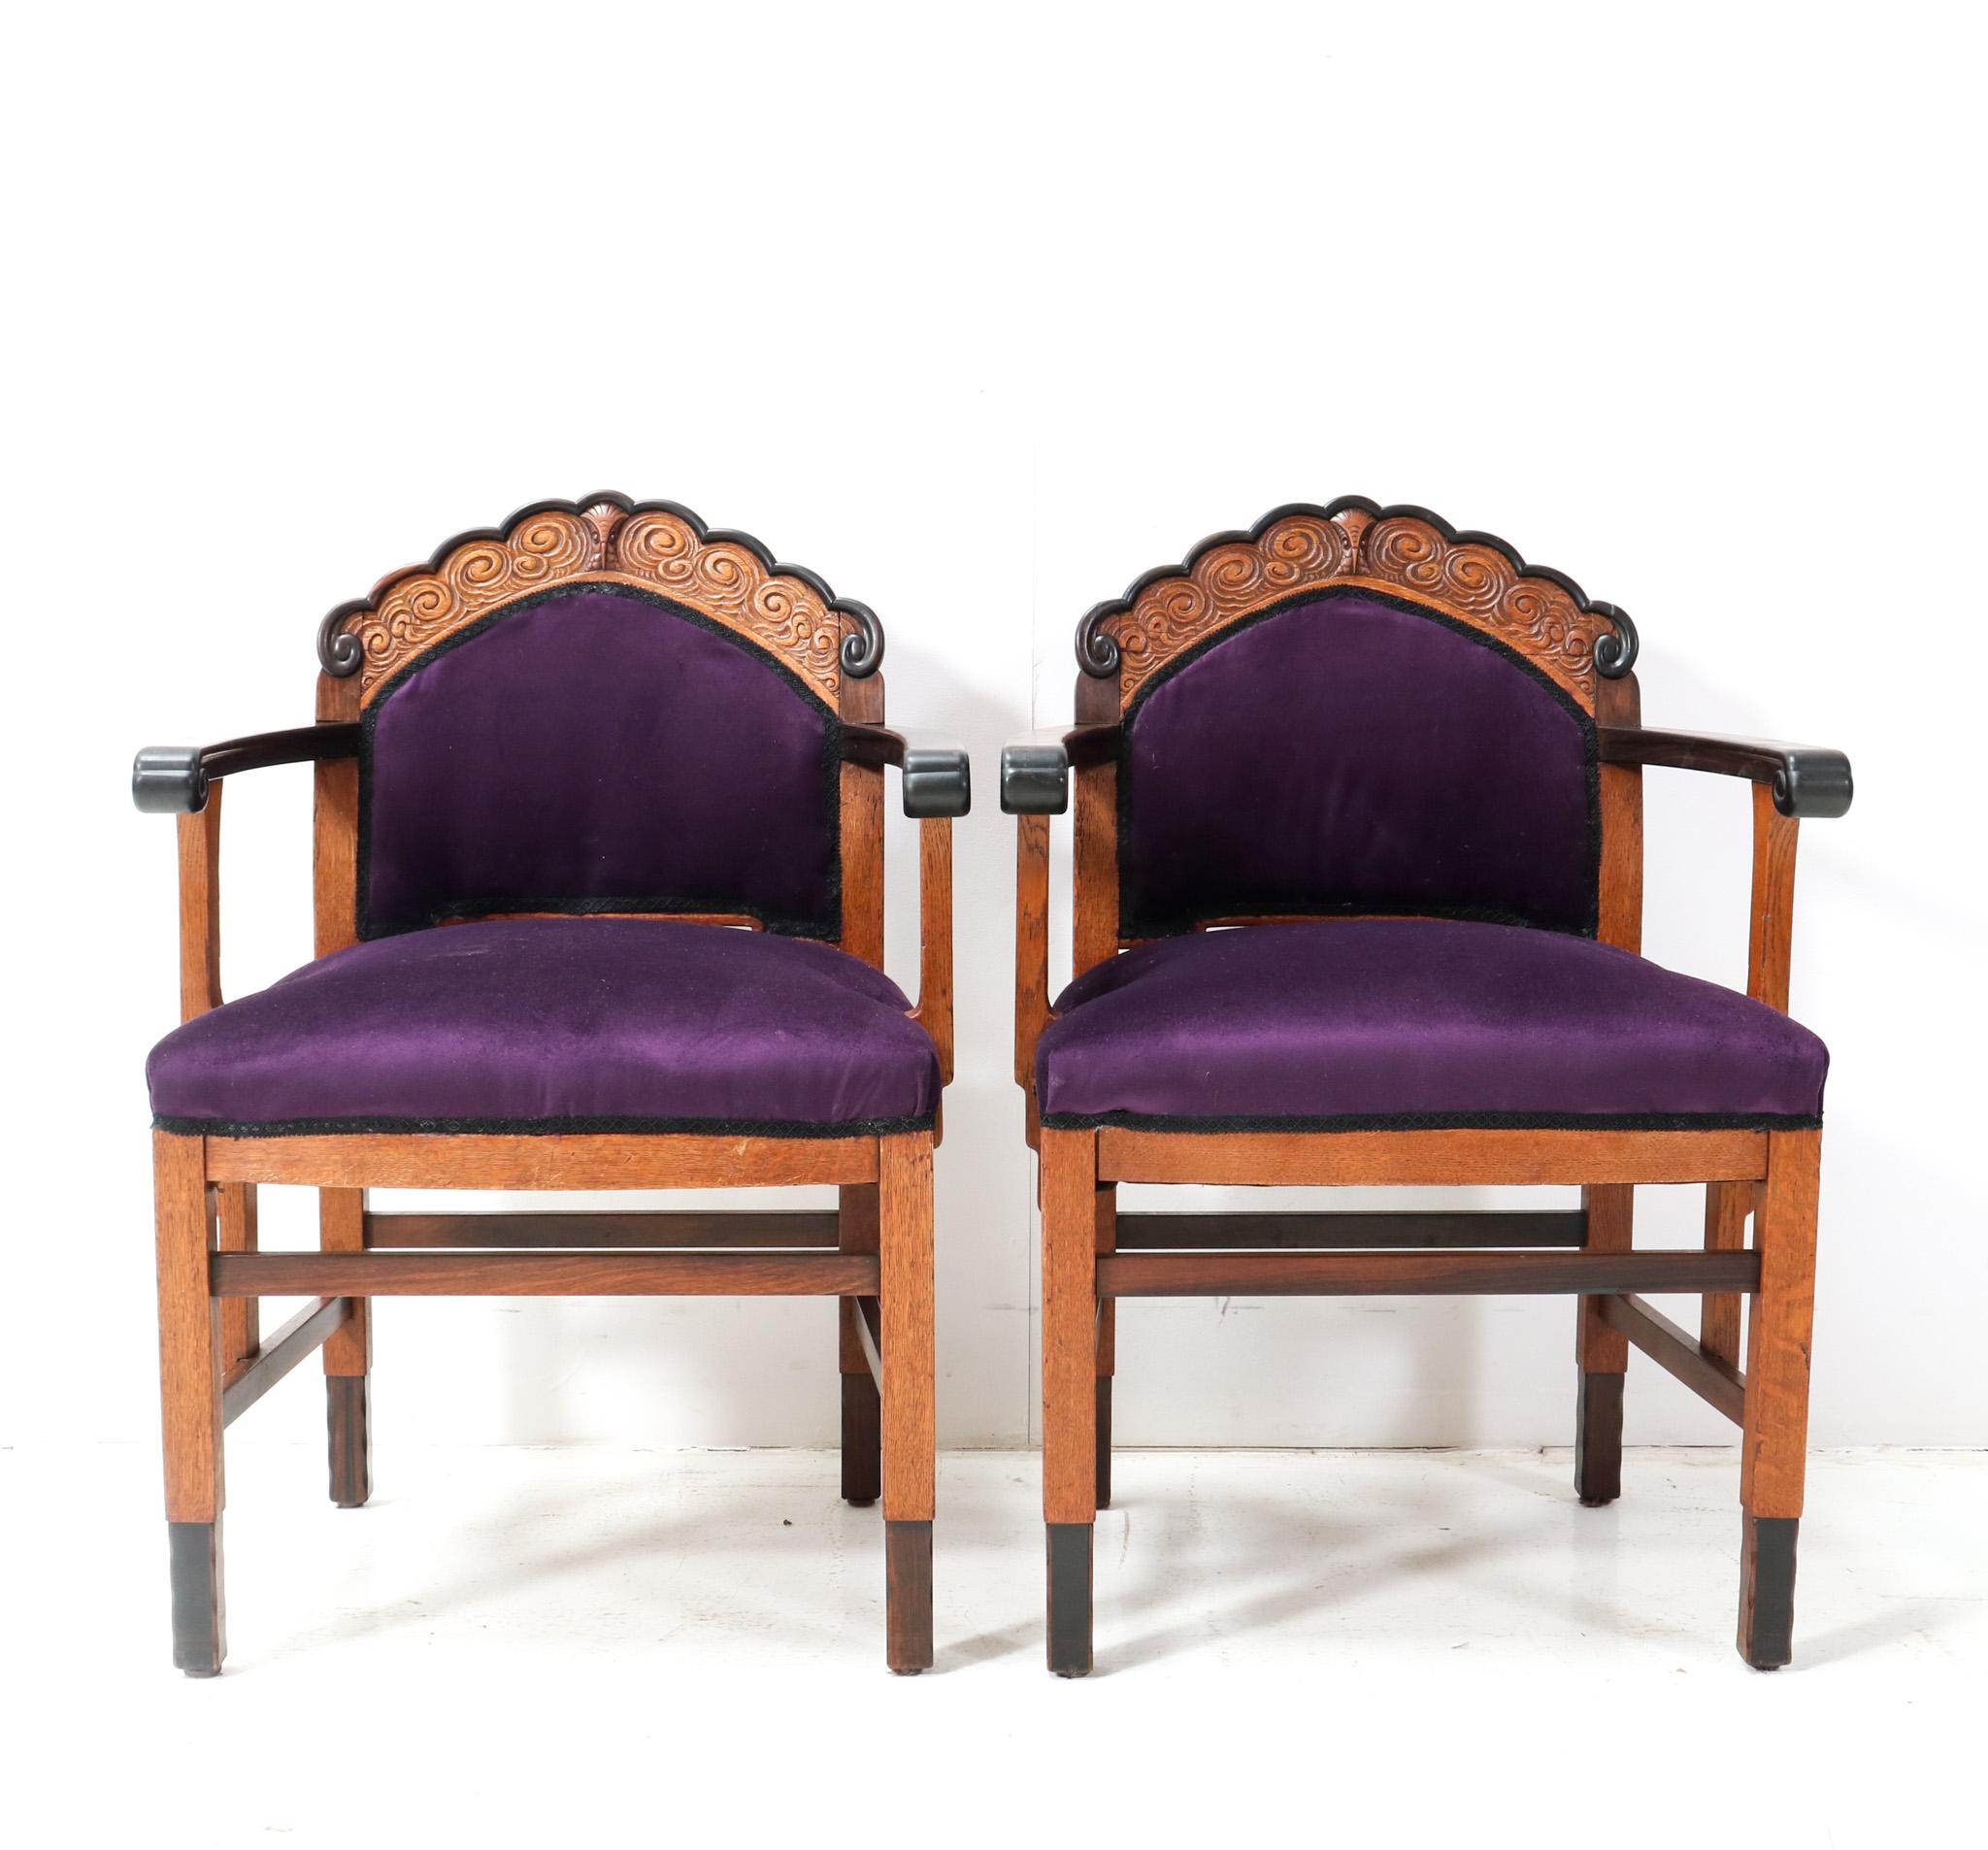 Prächtiger und äußerst seltener Satz von zwei Art Deco Amsterdamse School Sesseln.
Design von unbekanntem Künstler, aber in der Art der Fa. Bohrung Amsterdam.
Auffälliges niederländisches Design aus den 1920er Jahren.
Zwei Rahmen aus massiver Eiche